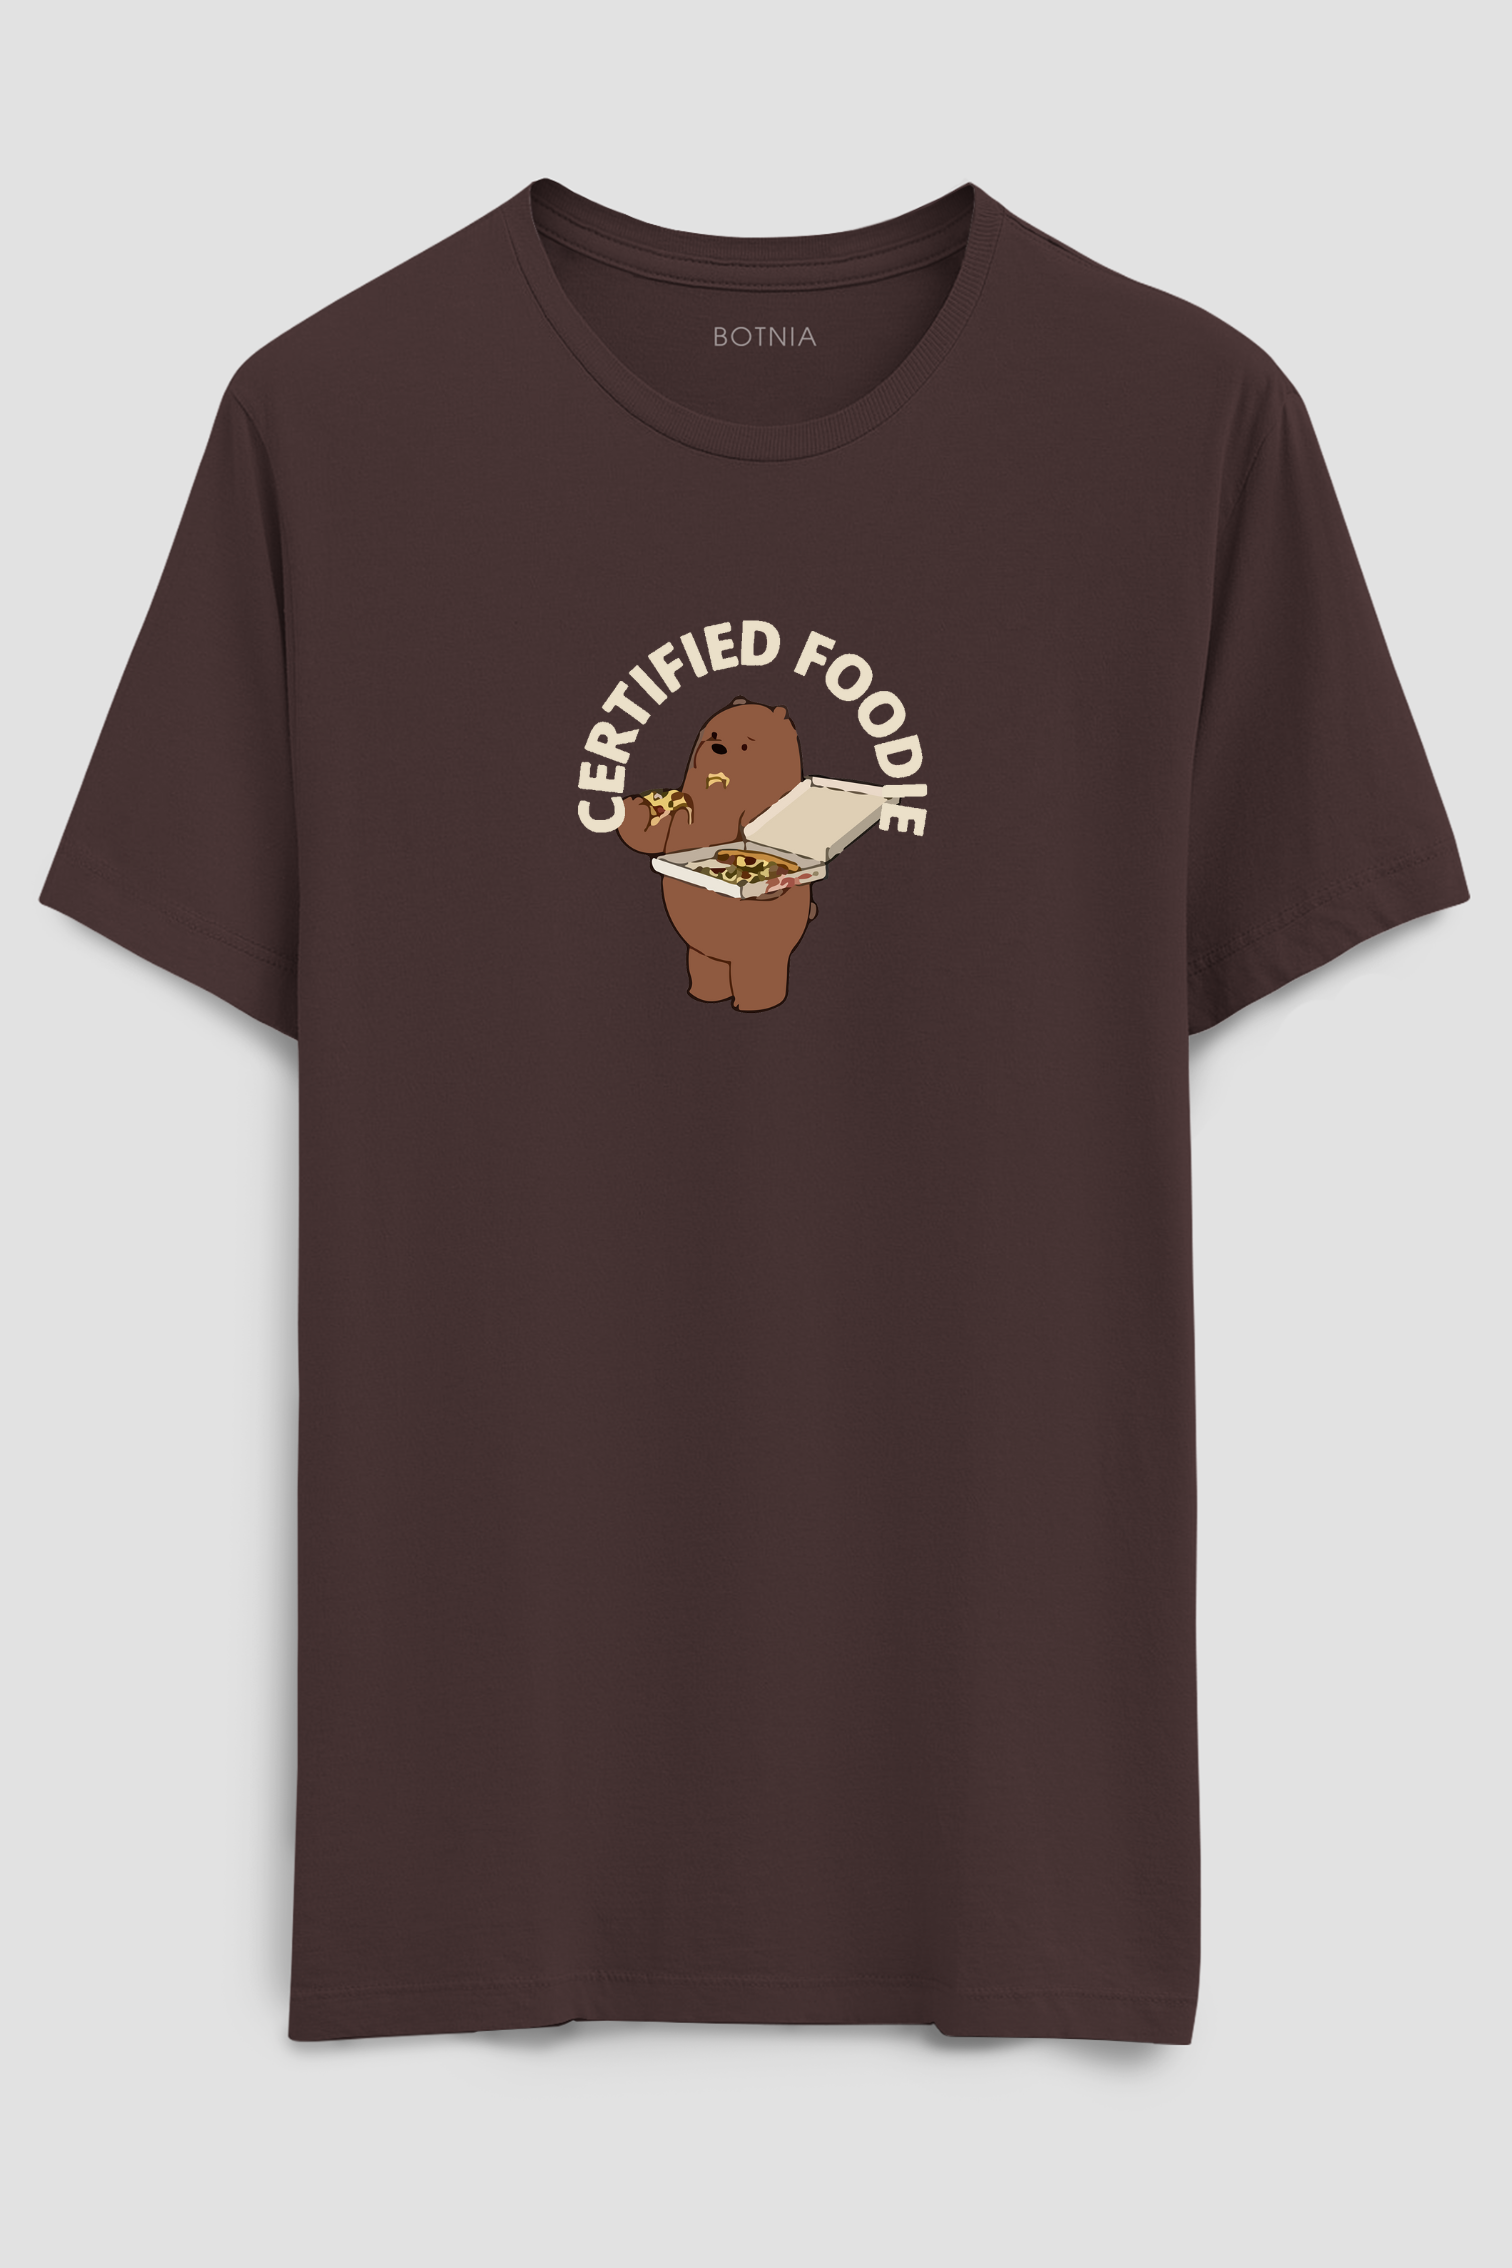 Certifed Foodie- Half sleeve t-shirt